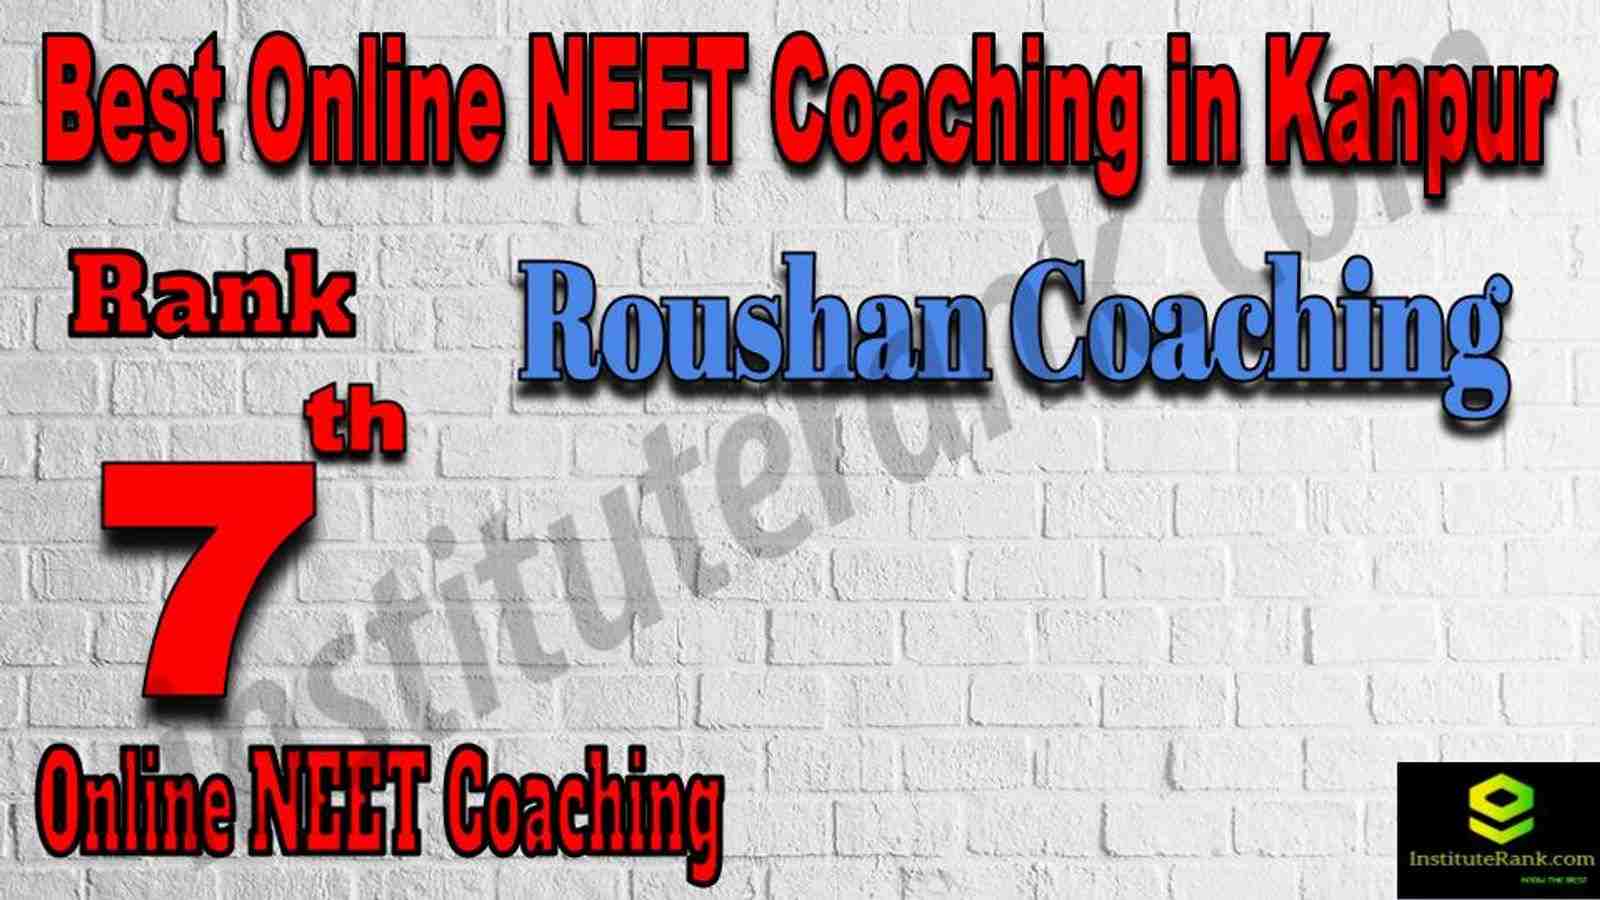 Rank 7 Best Online NEET Coaching in Kanpur